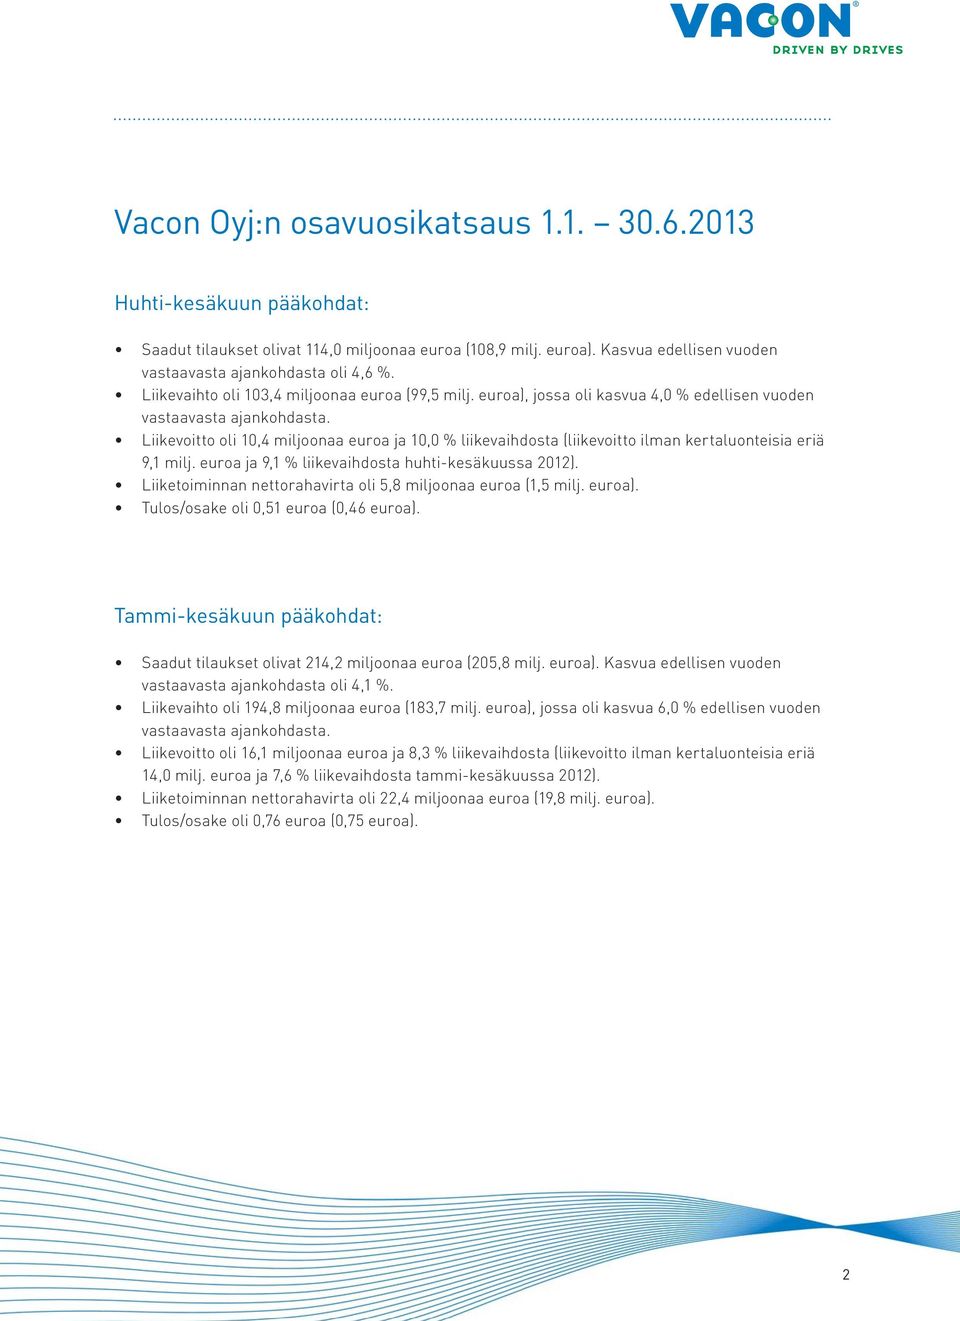 Liikevoitto oli 10,4 miljoonaa euroa ja 10,0 % liikevaihdosta (liikevoitto ilman kertaluonteisia eriä 9,1 milj. euroa ja 9,1 % liikevaihdosta huhti-kesäkuussa 2012).